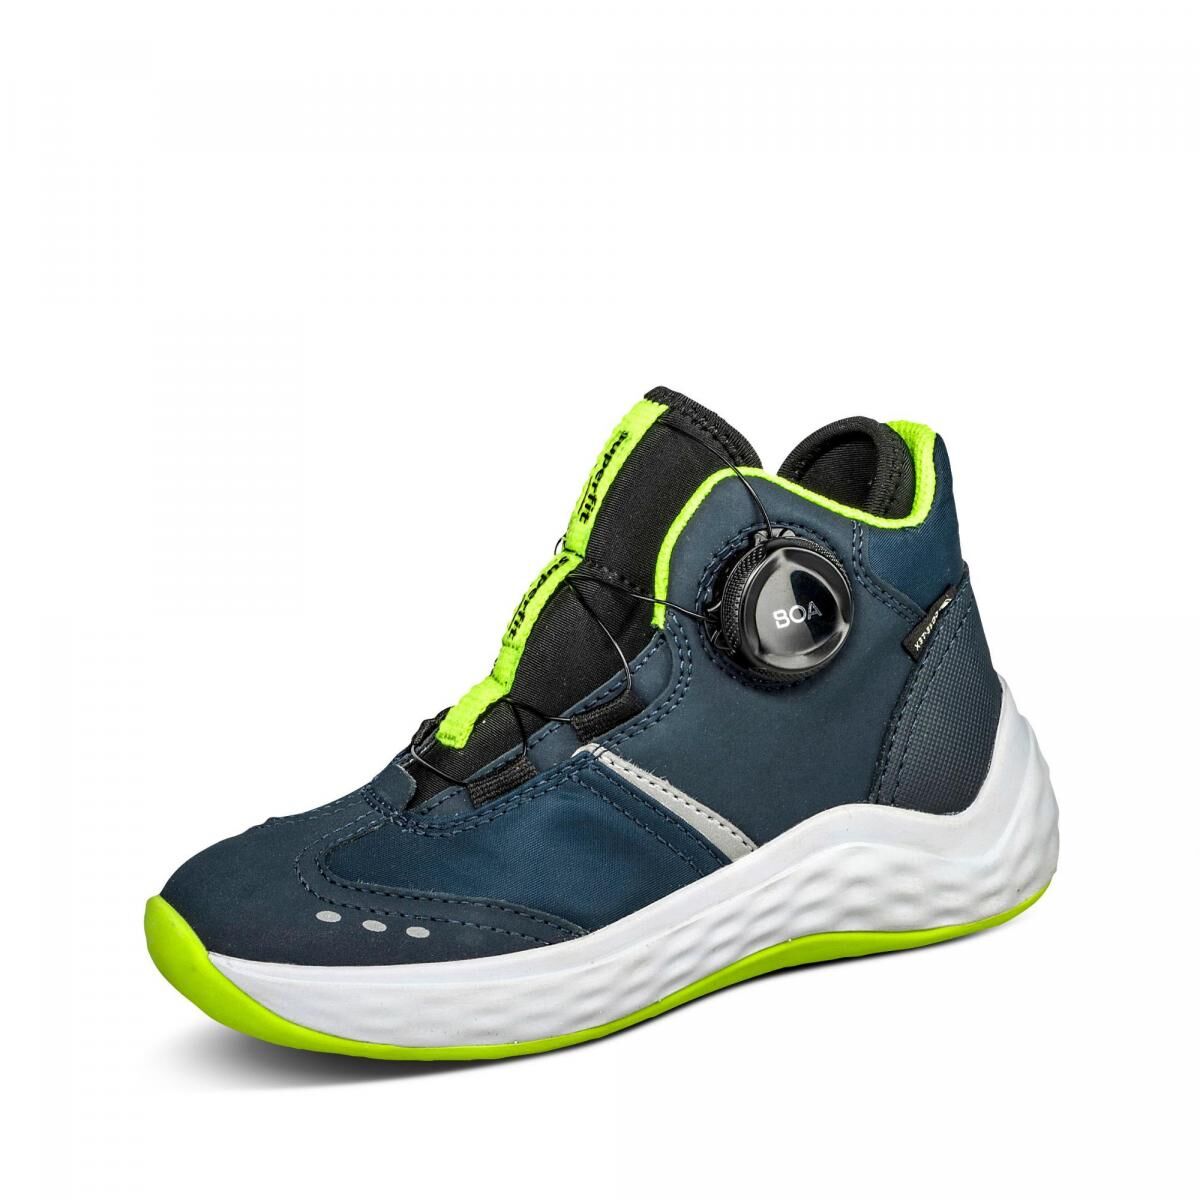 Superfit Bounce GORE-TEX Sneaker - Kinder - blau in Größe 28, jetzt im Angebot